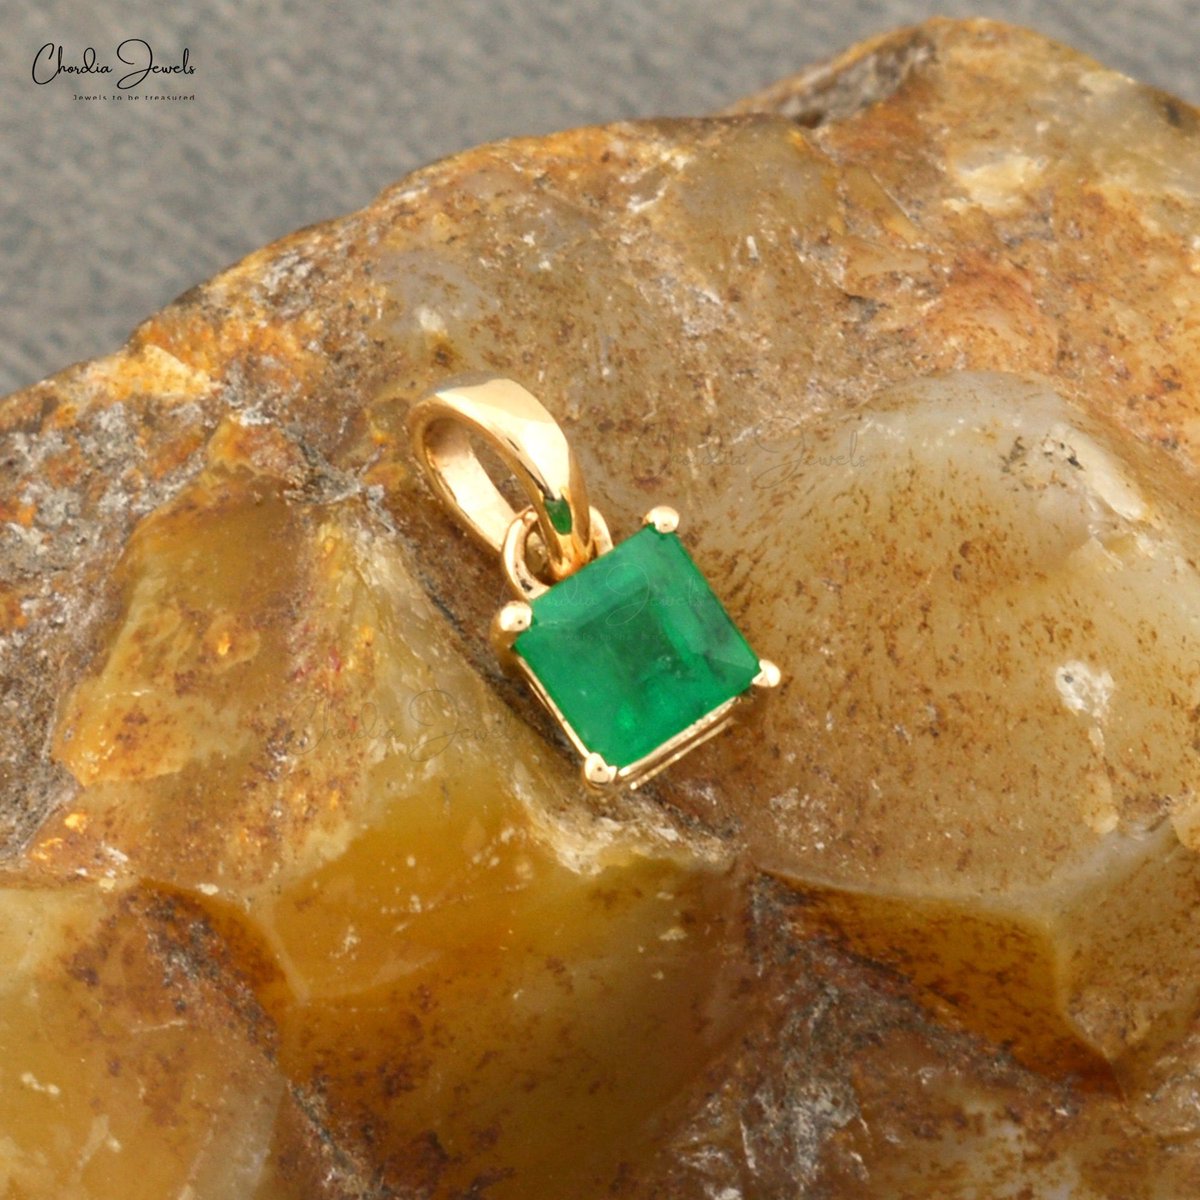 Natural Emerald Gemstone Pendant |
#etsy #emeraldgemstonependant #14kyellowgold #maybirthstonejewelry #weddinggiftforher etsy.me/3hSiNPD